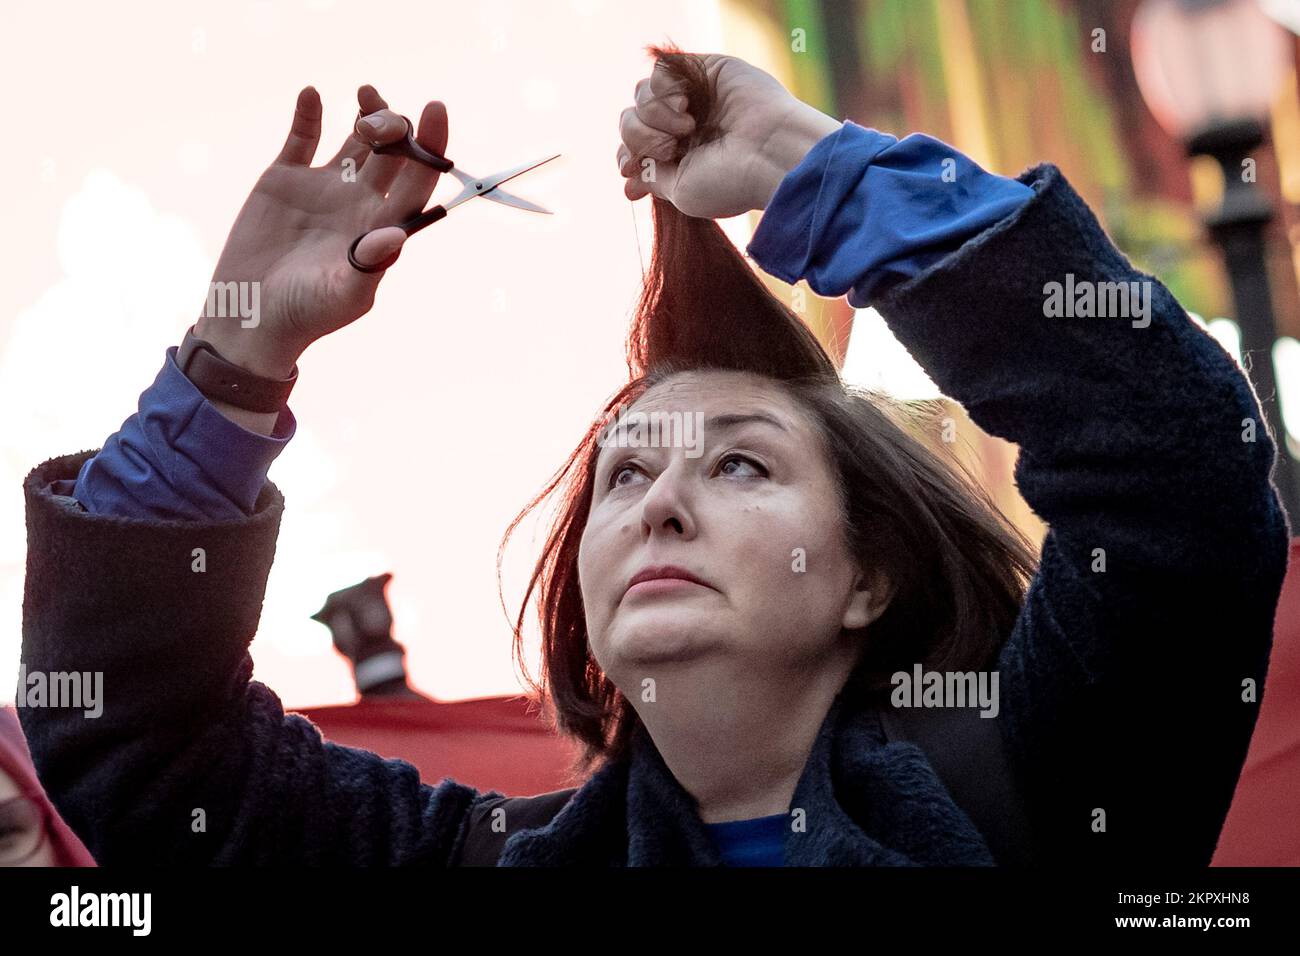 Londra, Regno Unito. 26th Novembre 2022. Protesta iraniana per il taglio dei capelli. Maryam Namazie, scrittore e attivista iraniano, si prepara a tagliare i capelli in protesta come parte delle azioni in corso che chiedono il cambiamento di regime a Teheran, in Iran. Per molte donne iraniane il taglio dei capelli – un segno di bellezza che si decreterà di nascondere nella Repubblica islamica – è una forma di protesta toccante. I manifestanti chiedono giustizia per le centinaia di manifestanti uccisi dopo la morte di Mahsa Amini, 22 anni. Credit: Guy Corbishley/Alamy Live News Foto Stock